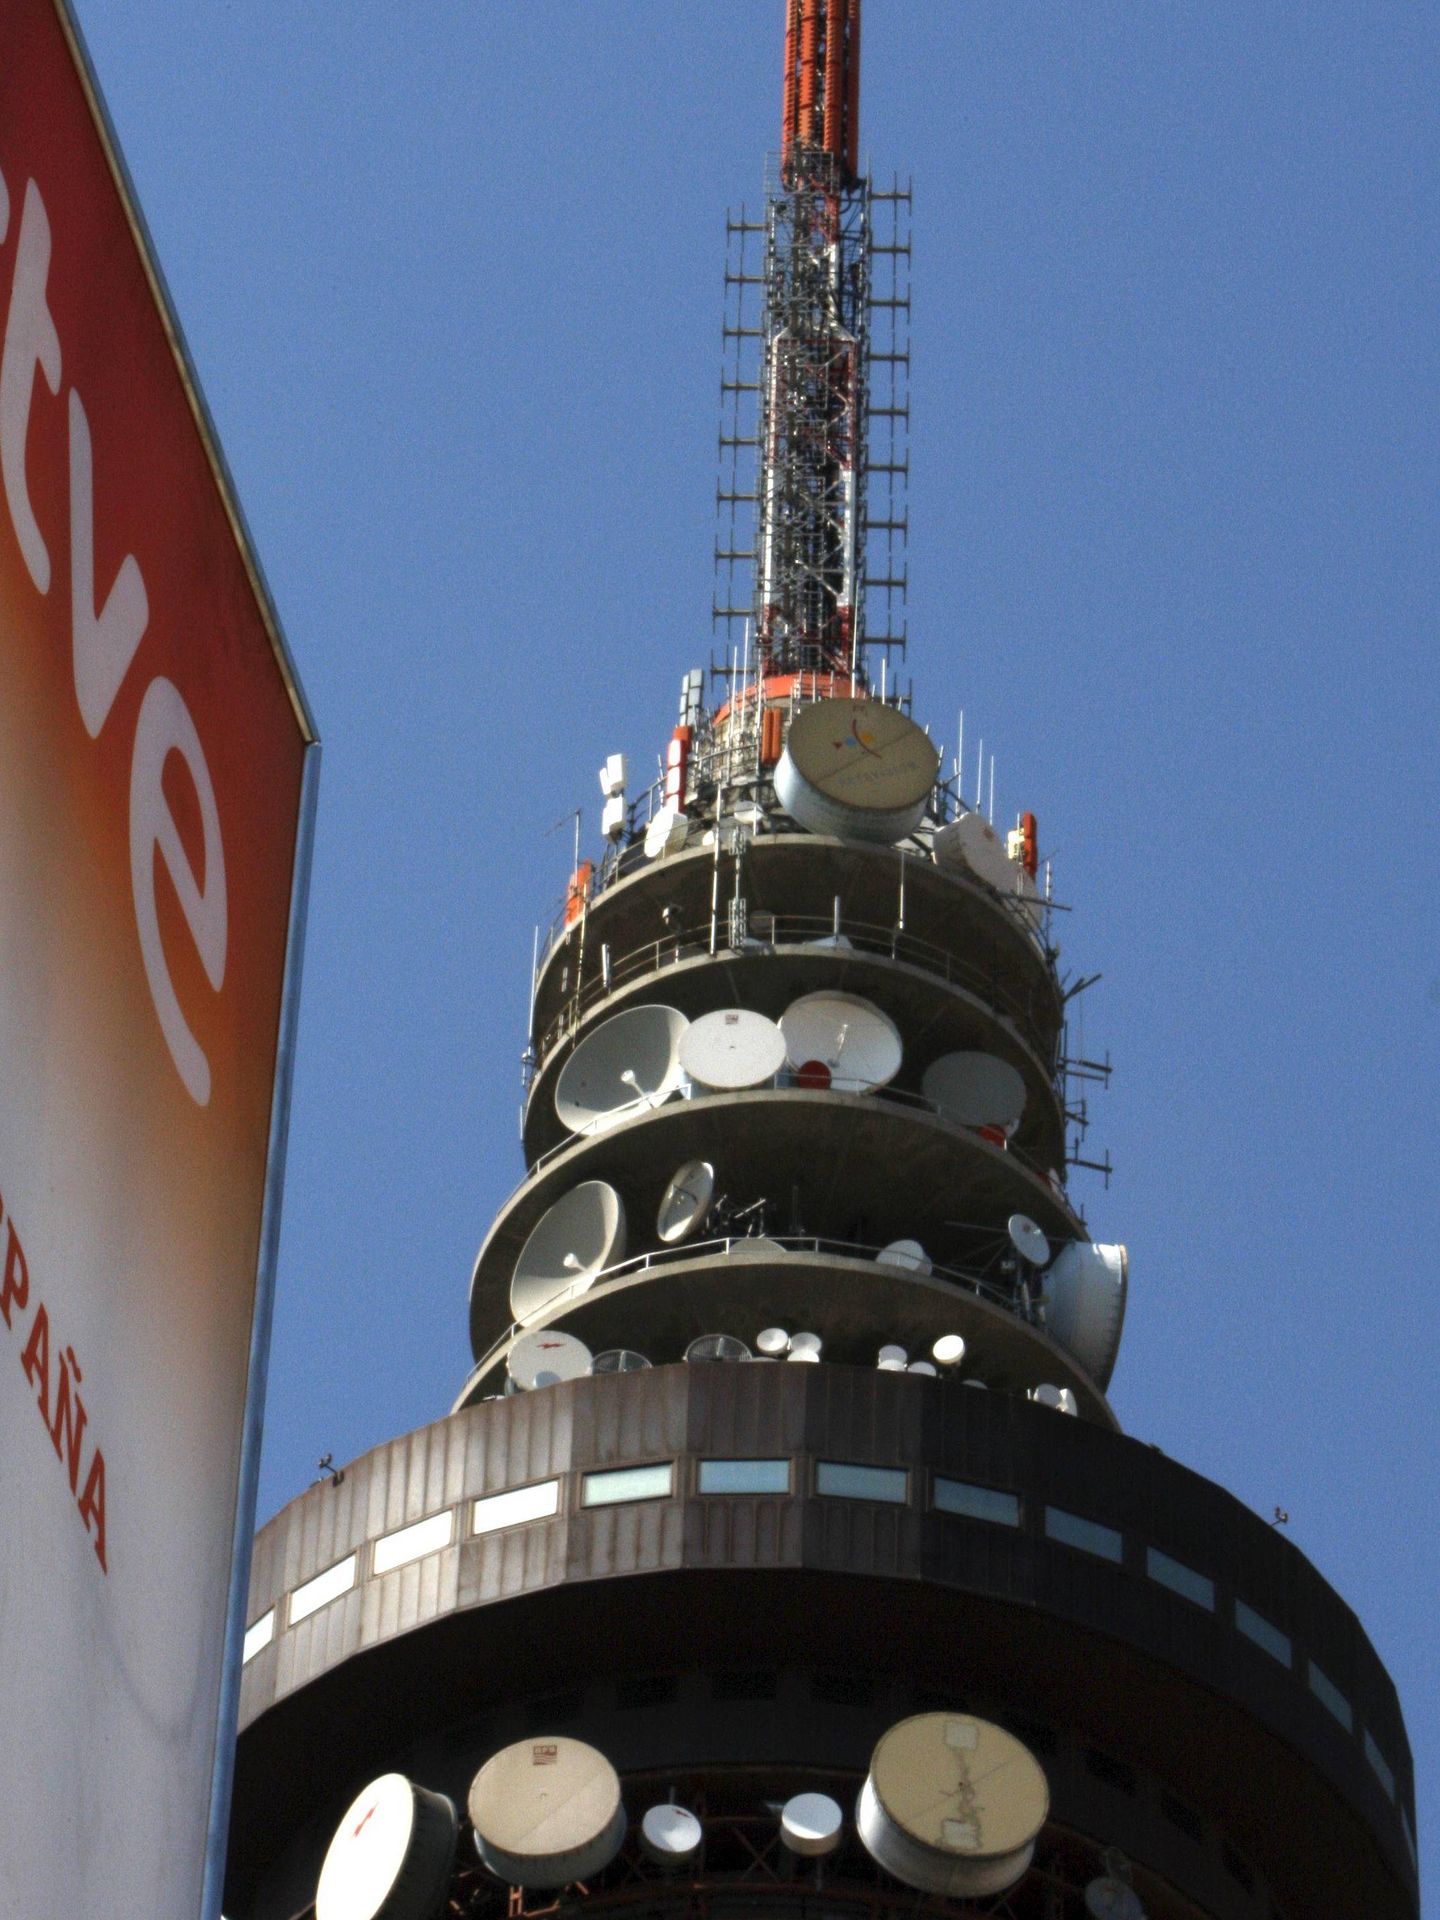 La sede de RTVE en Torrespaña, el famoso Pirulí, en Madrid. (EFE)